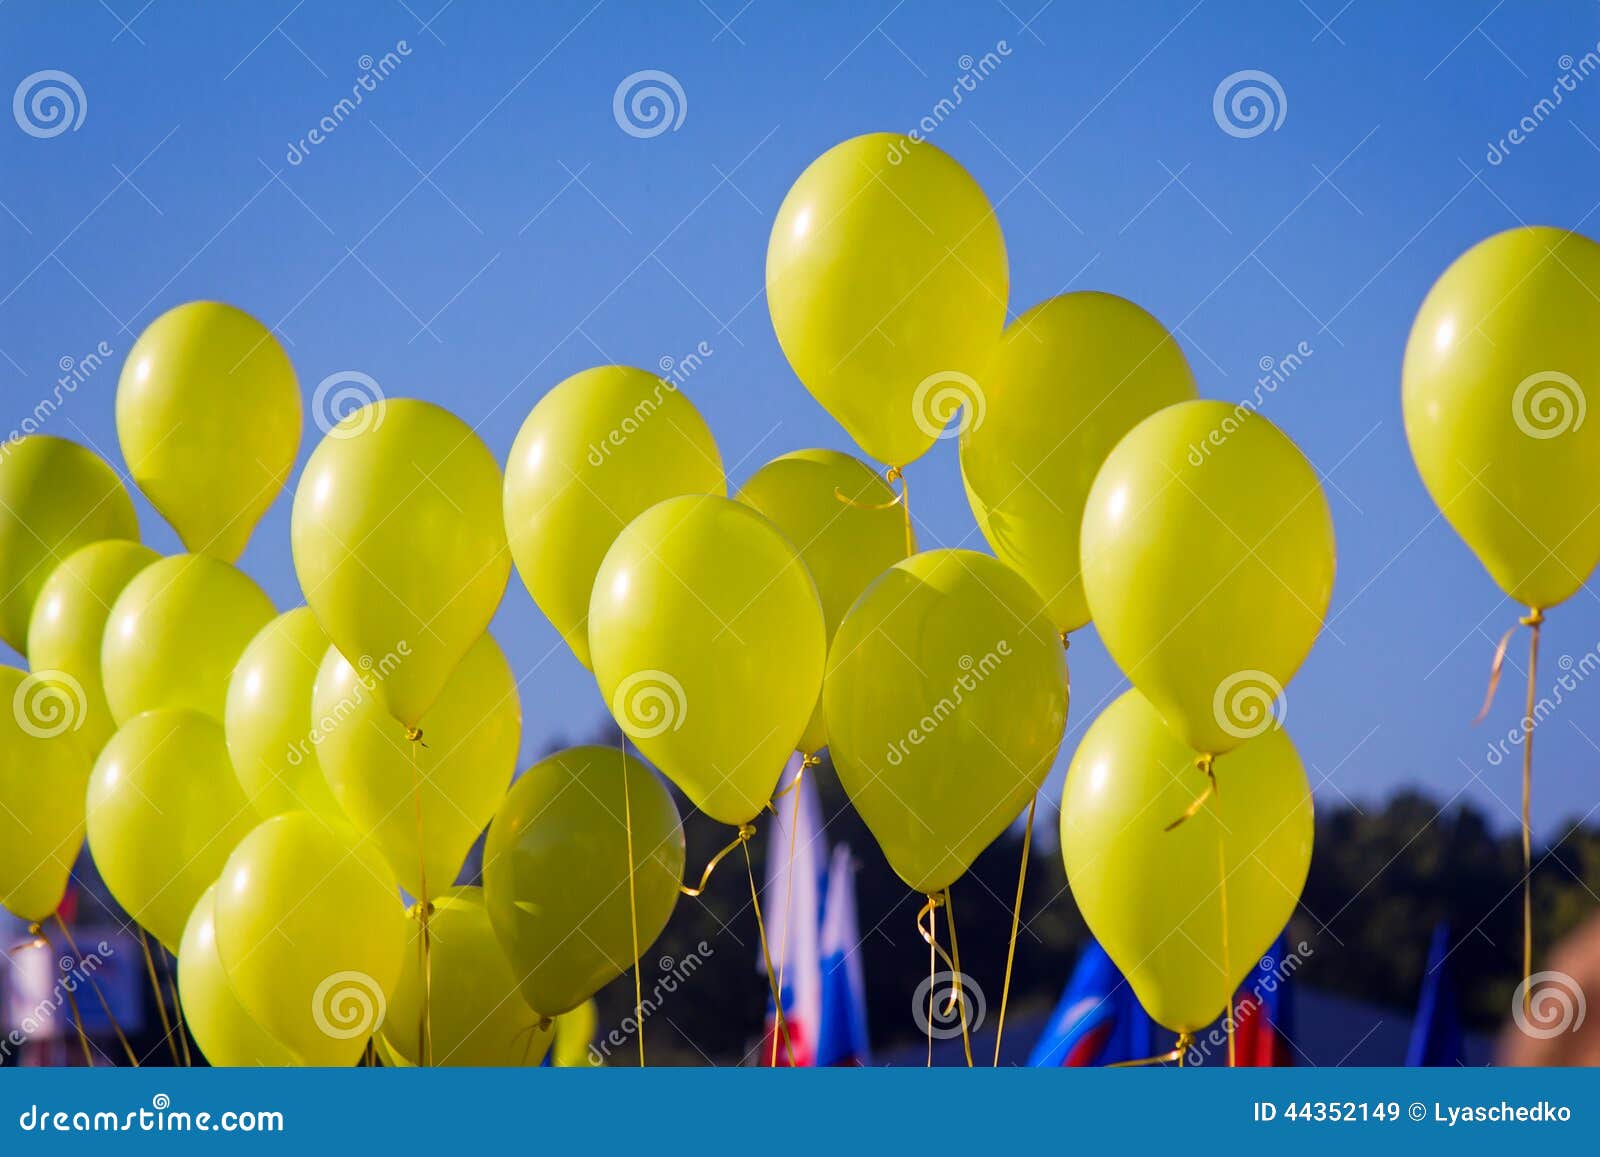 Каким газом заполняют воздушные шары. Красивые желтые шары. Воздушные шары желтые на синем небе. Желтые шары на голубом небе. Желто-фиолетовые шары в небе.